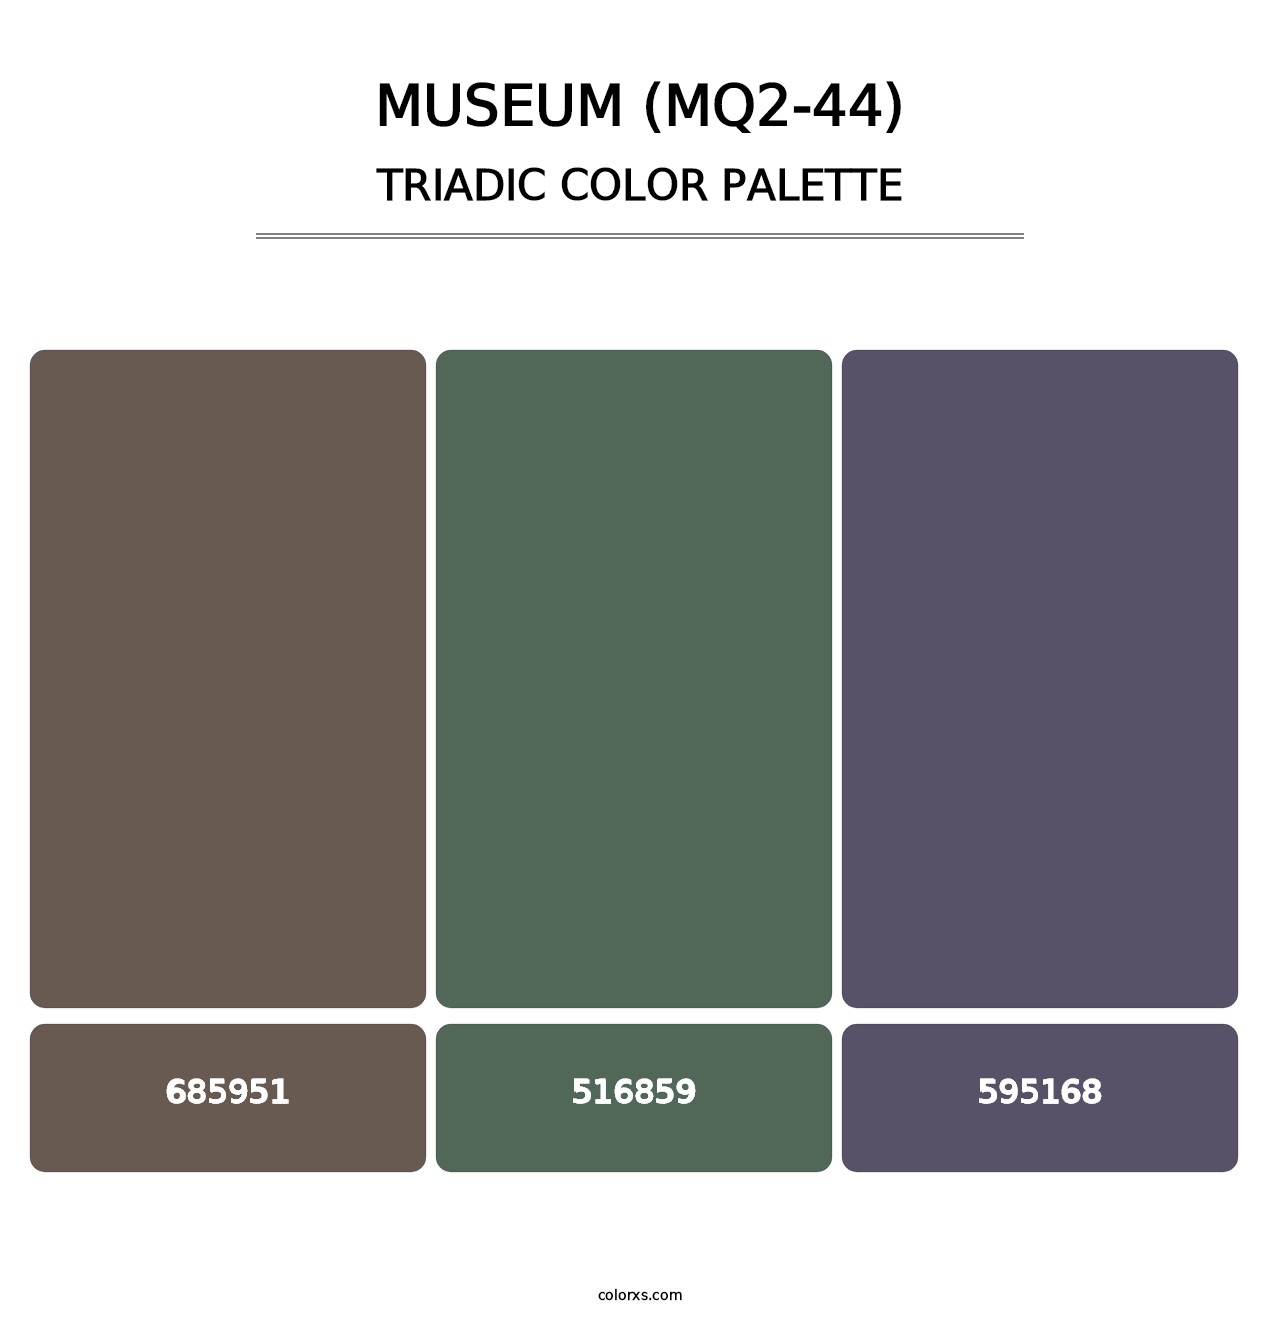 Museum (MQ2-44) - Triadic Color Palette